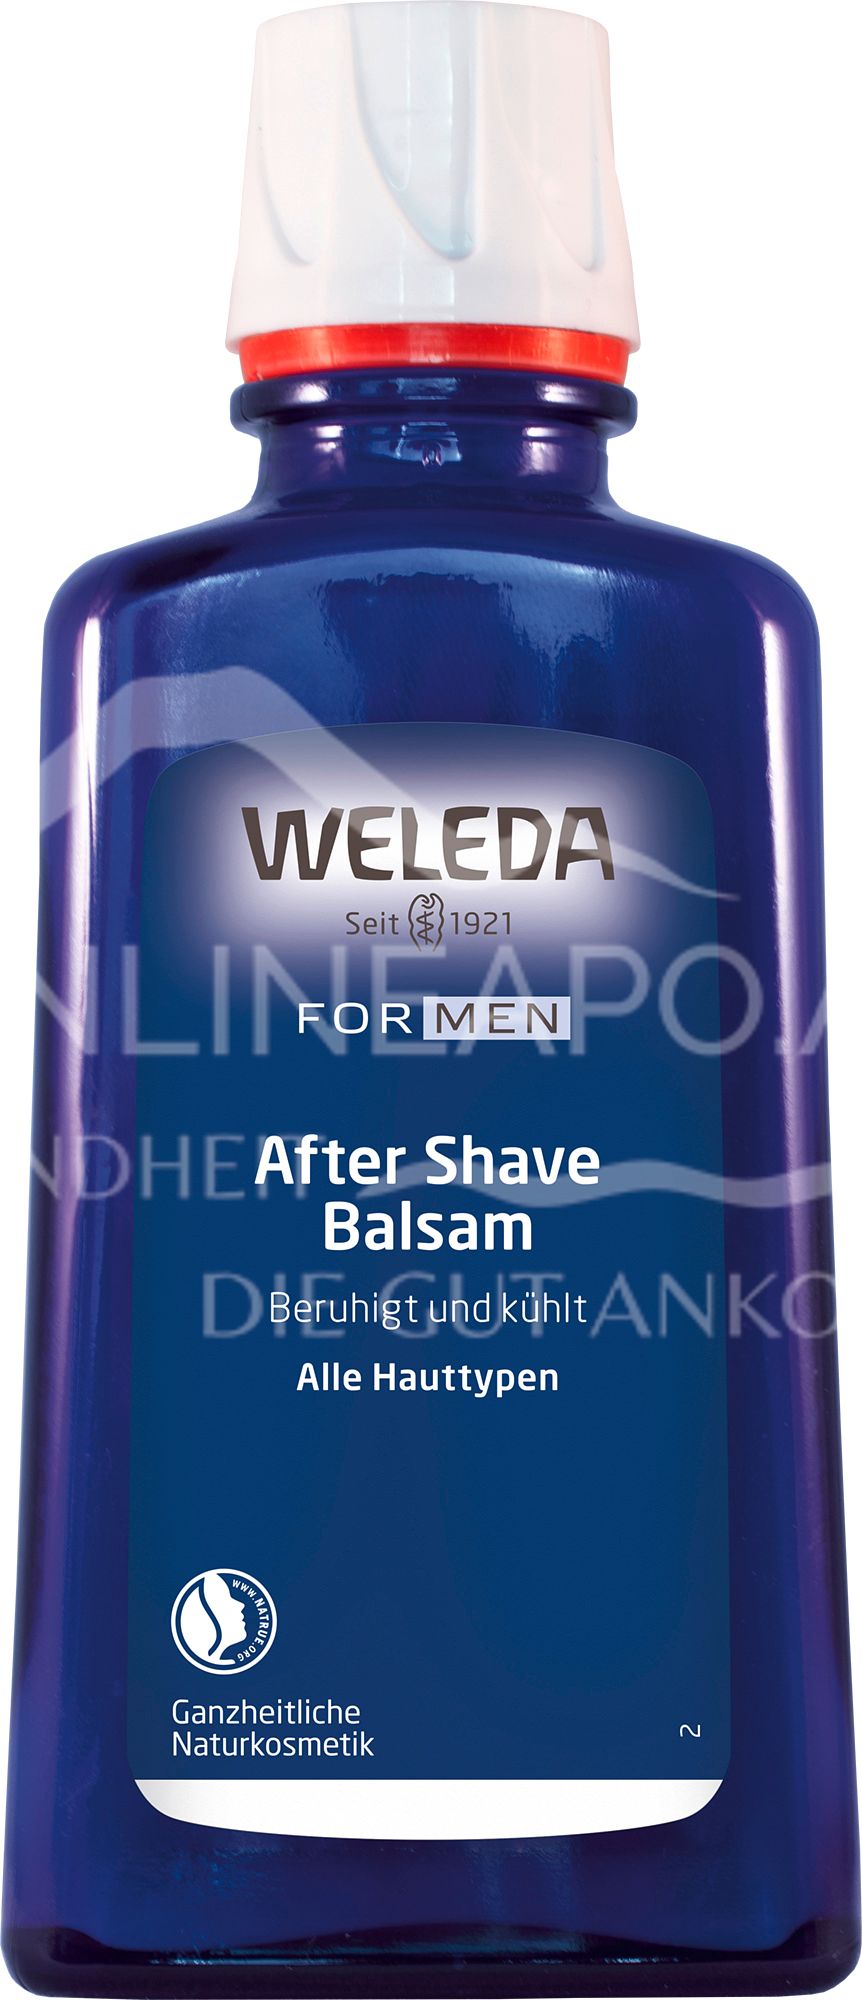 Welelda FOR MEN After Shave Balsam